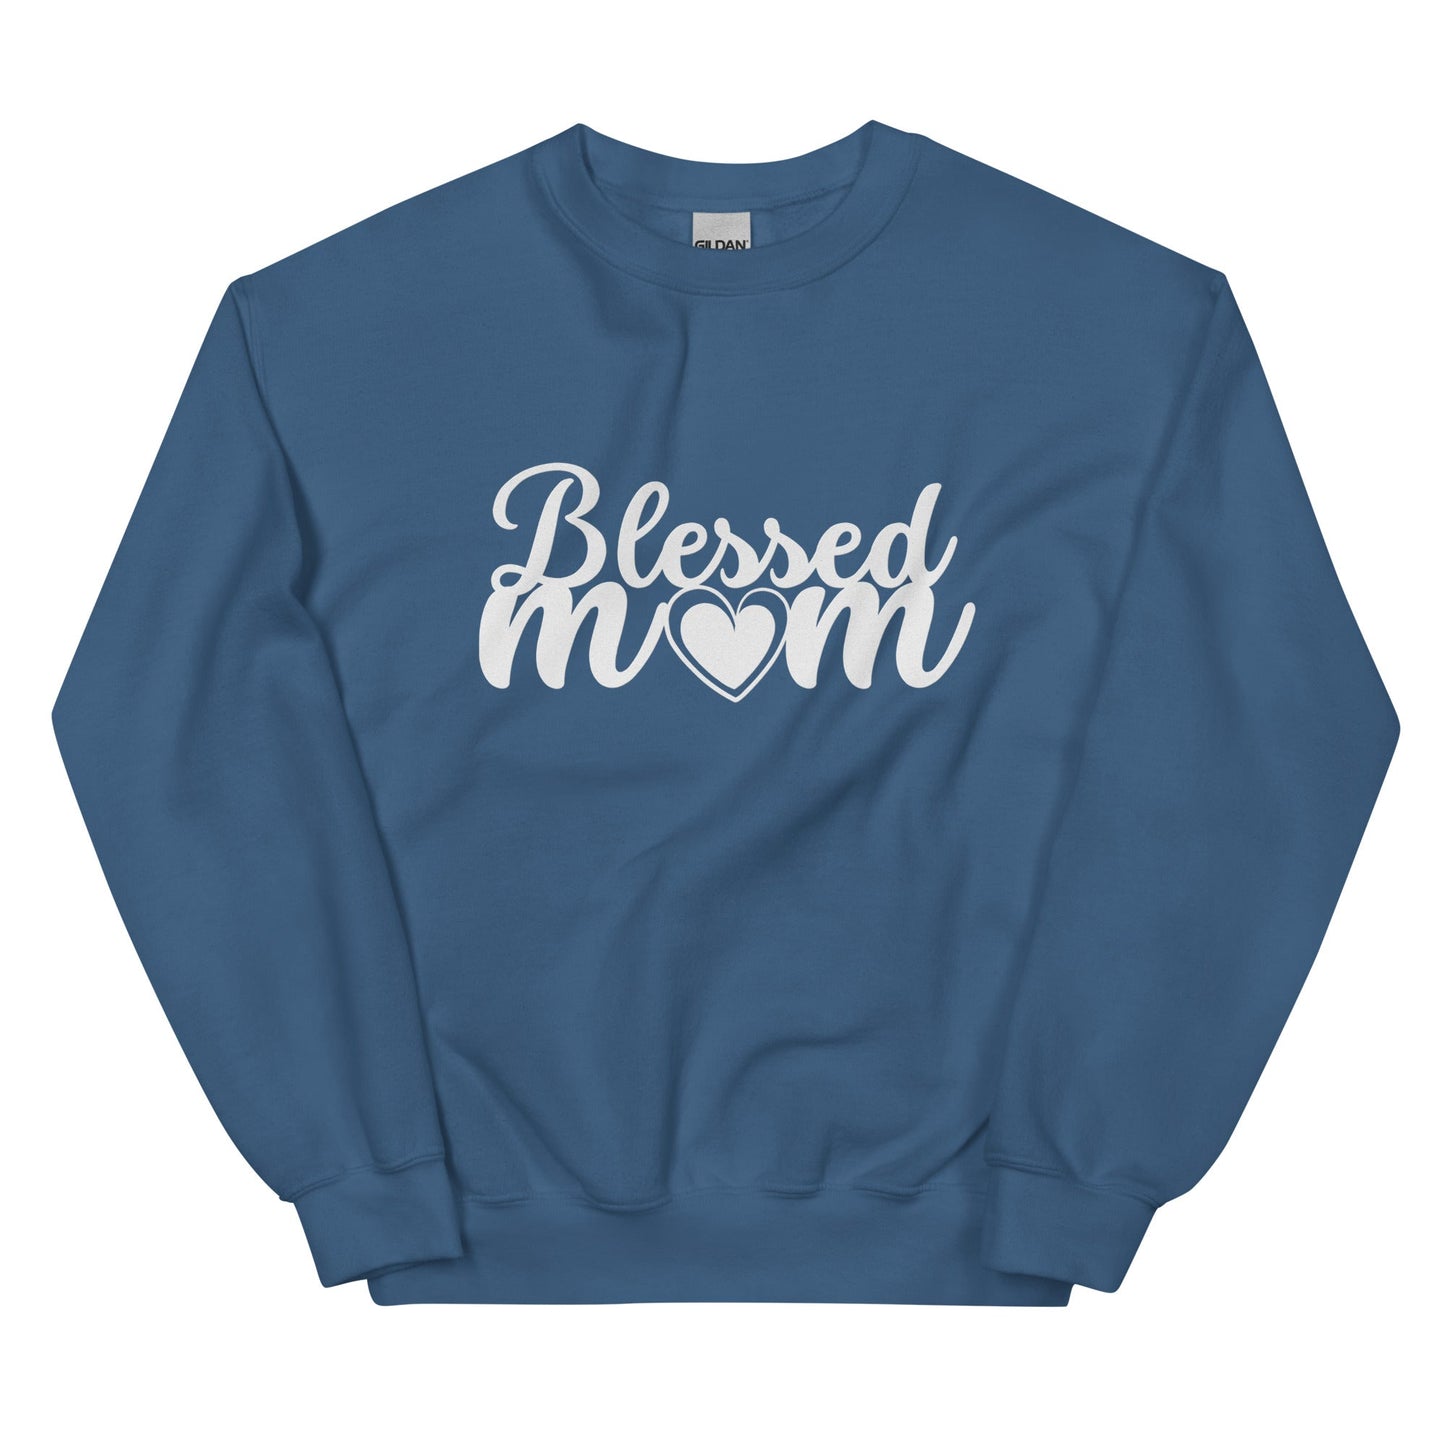 Blessed Mom Heart Sweatshirt-Indigo Blue-S-mysticalcherry